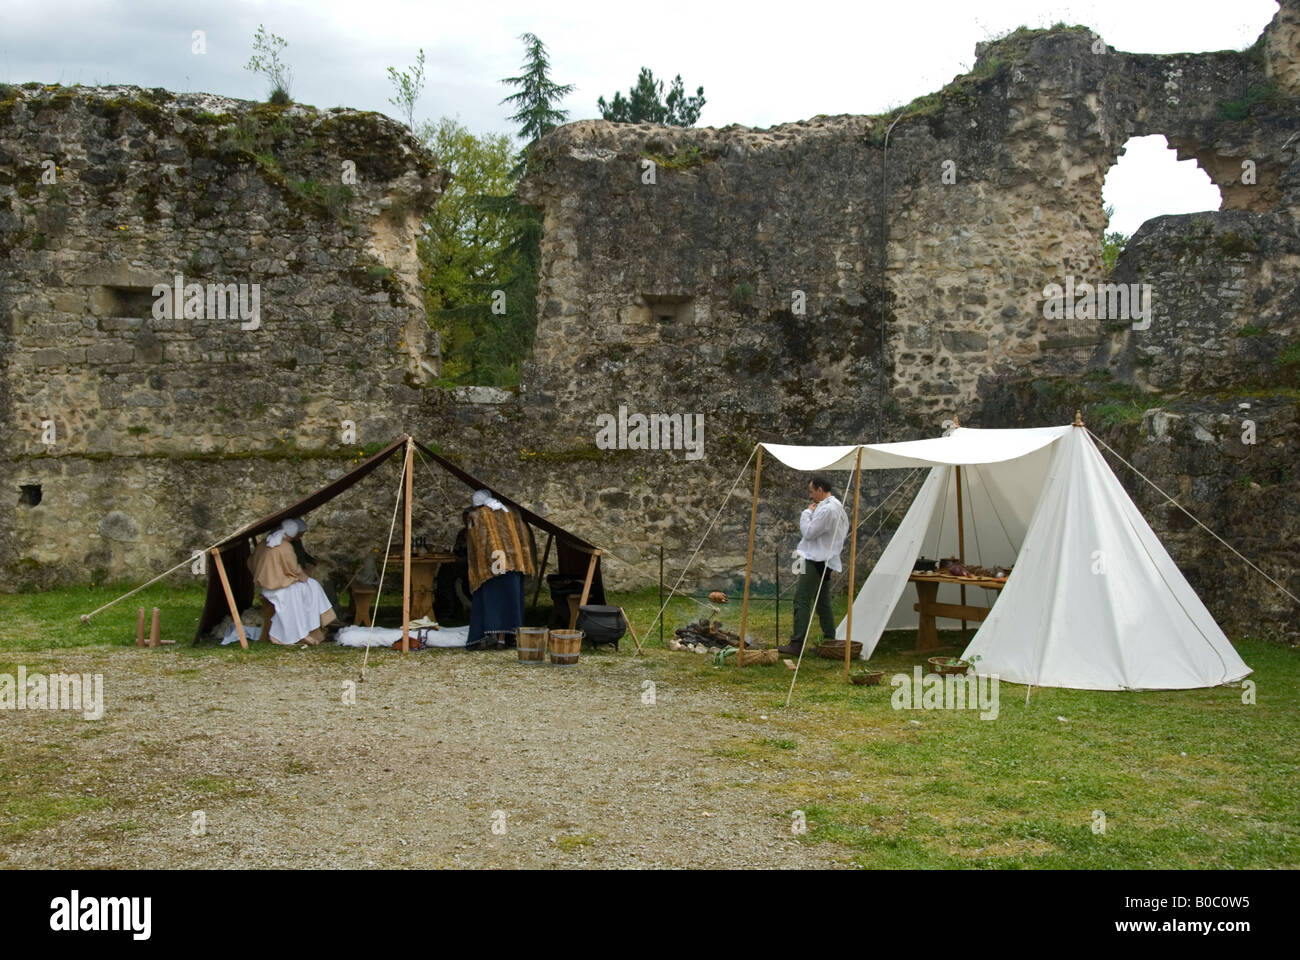 Stock Foto ein mittelalterliches Lager re Eneactment Szene Stockfoto